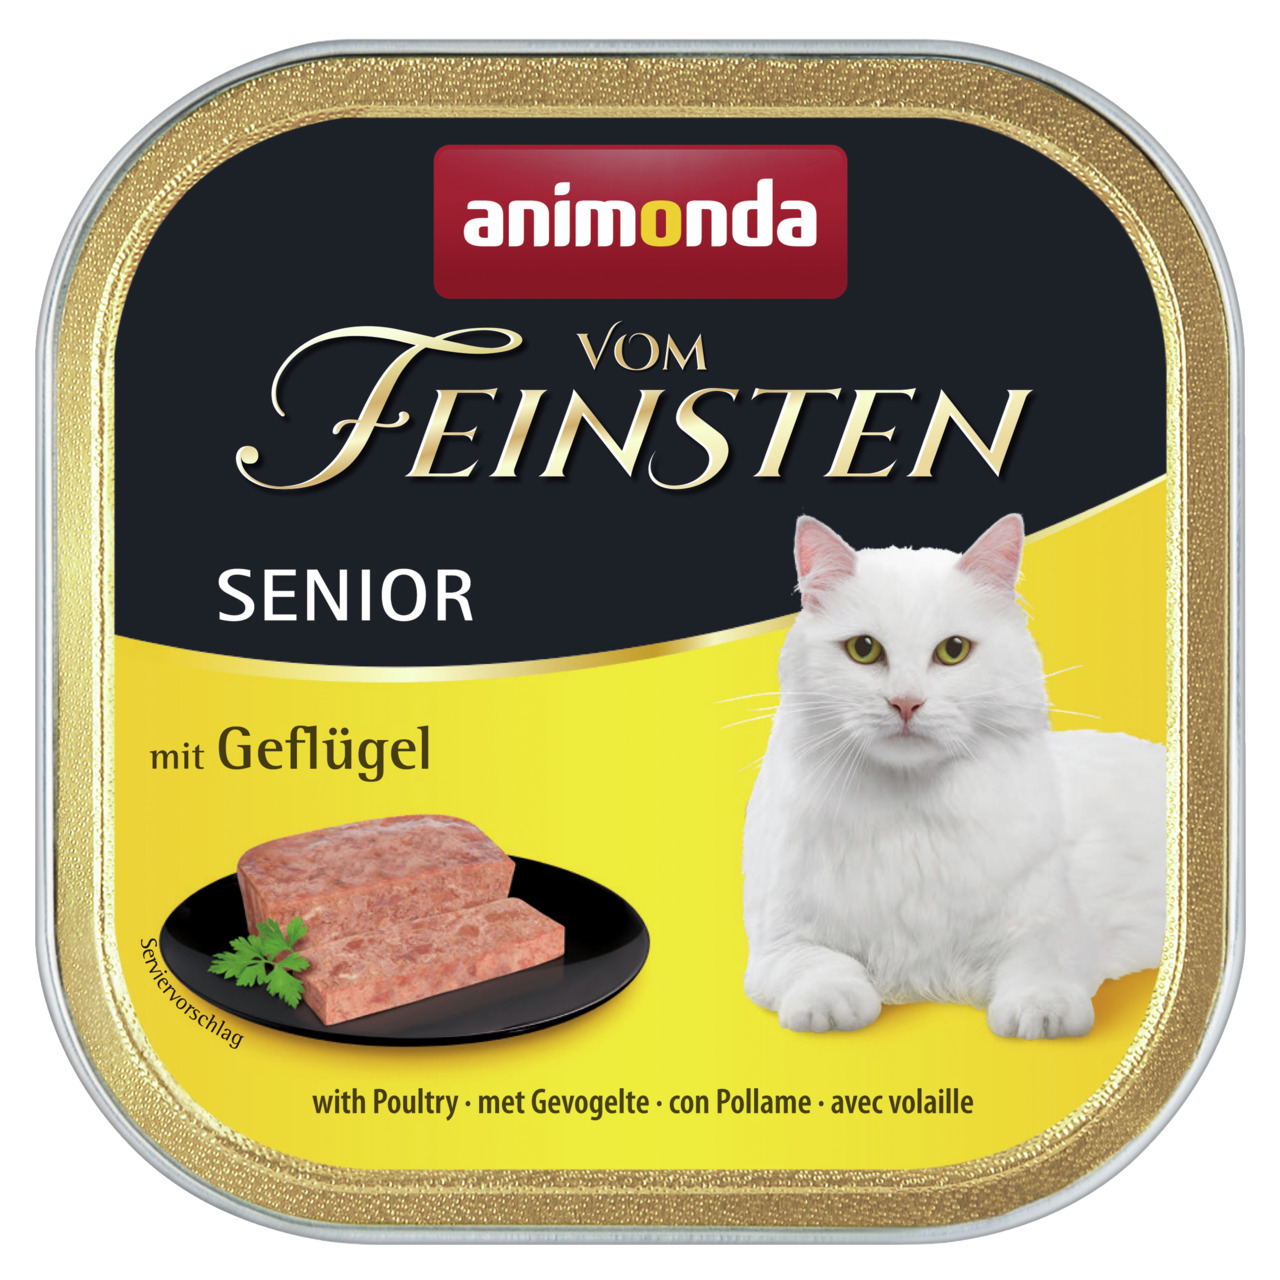 Animonda vom Feinsten Senior mit Geflügel Katzen Nassfutter 100 g